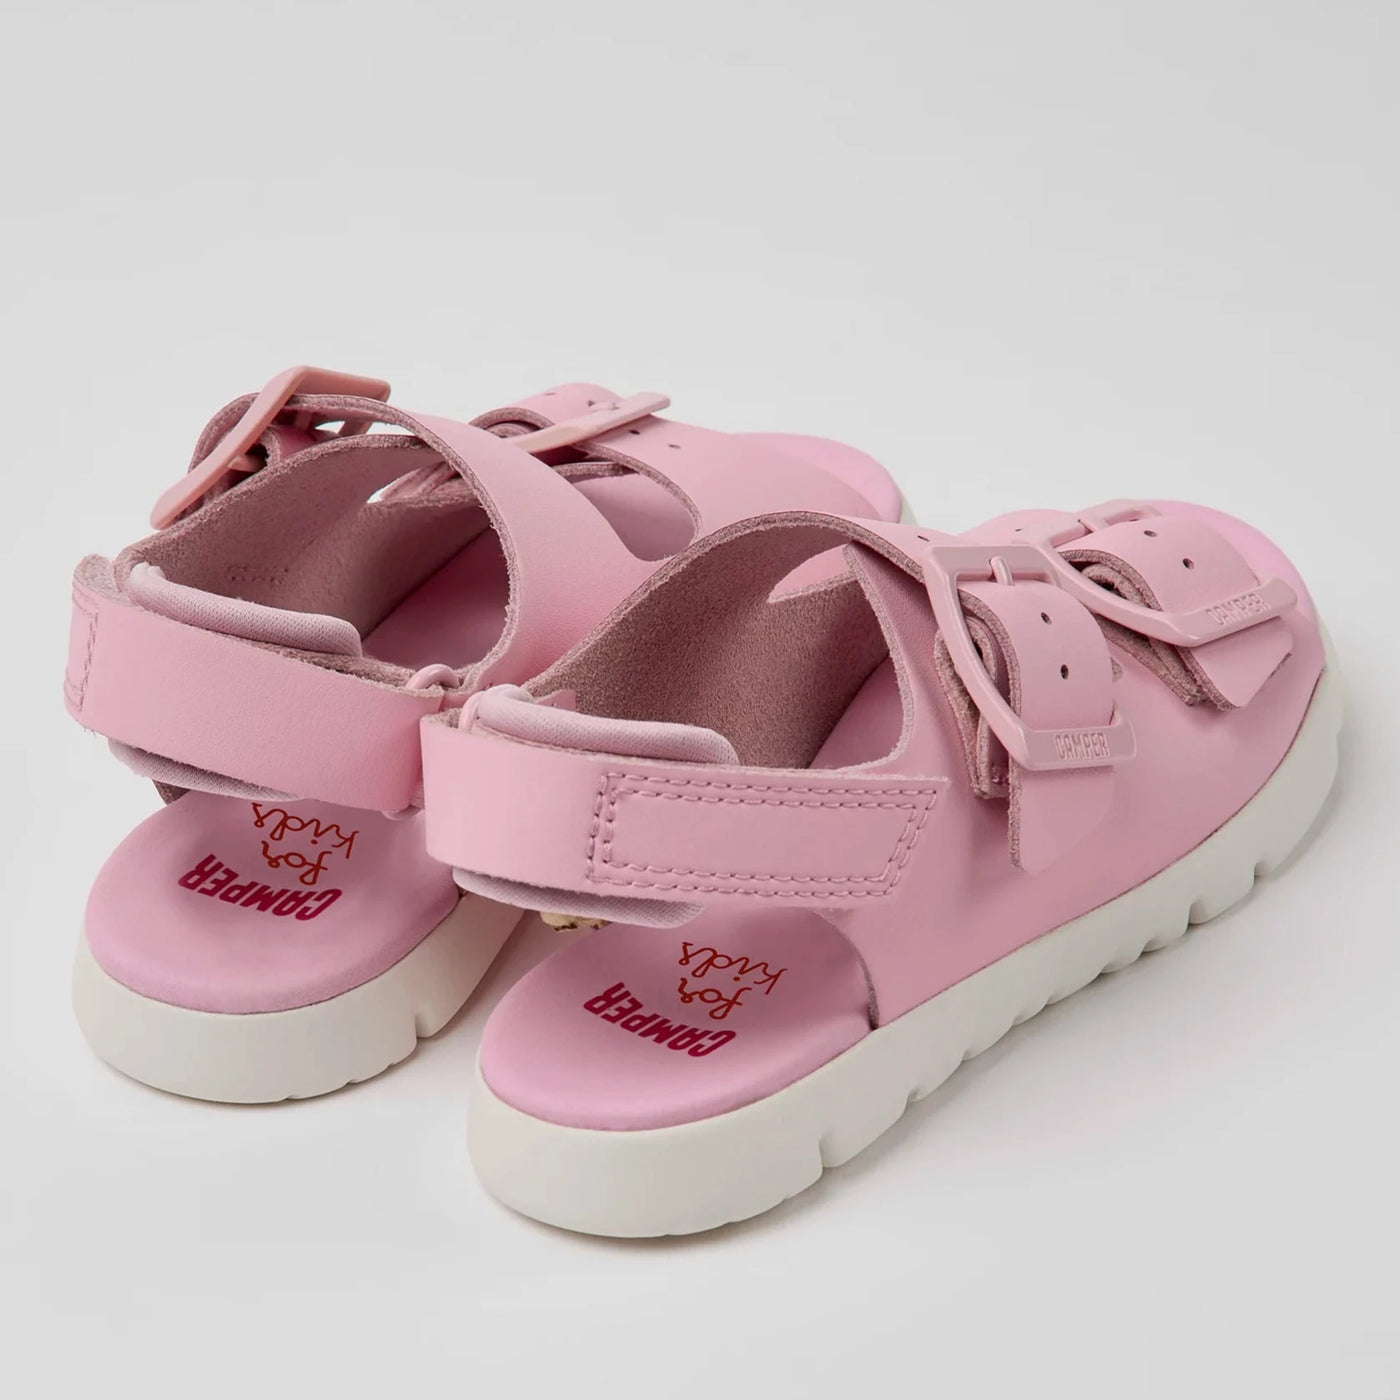 Camper Kids Girl ORUGA Pink Leather Sandals